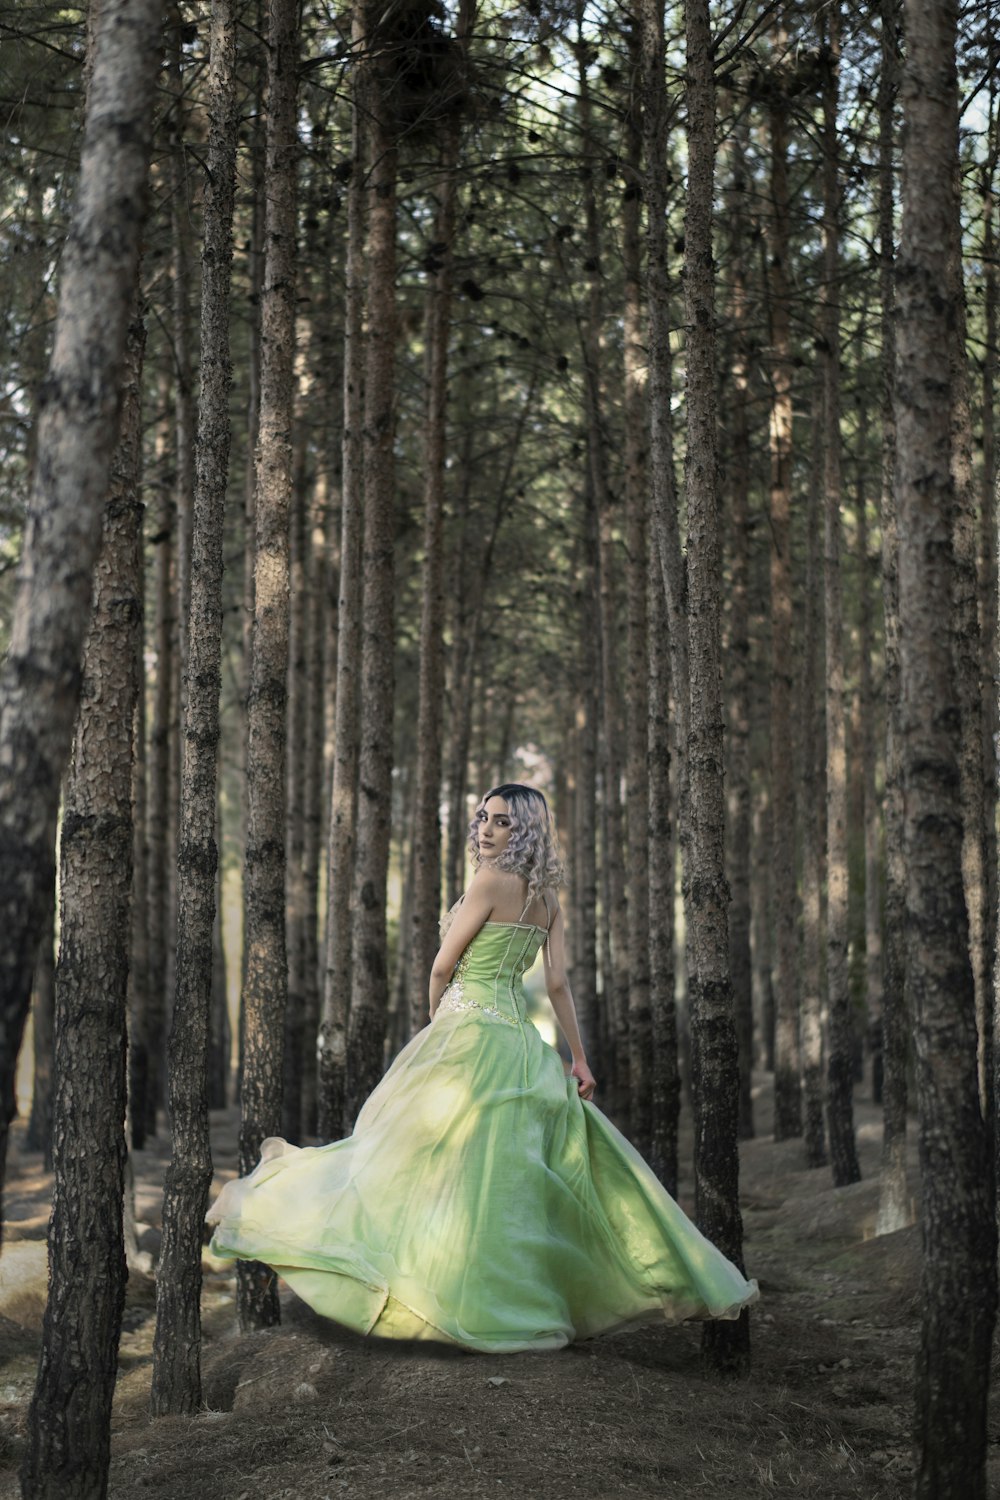 Frau im grünen Kleid im Wald